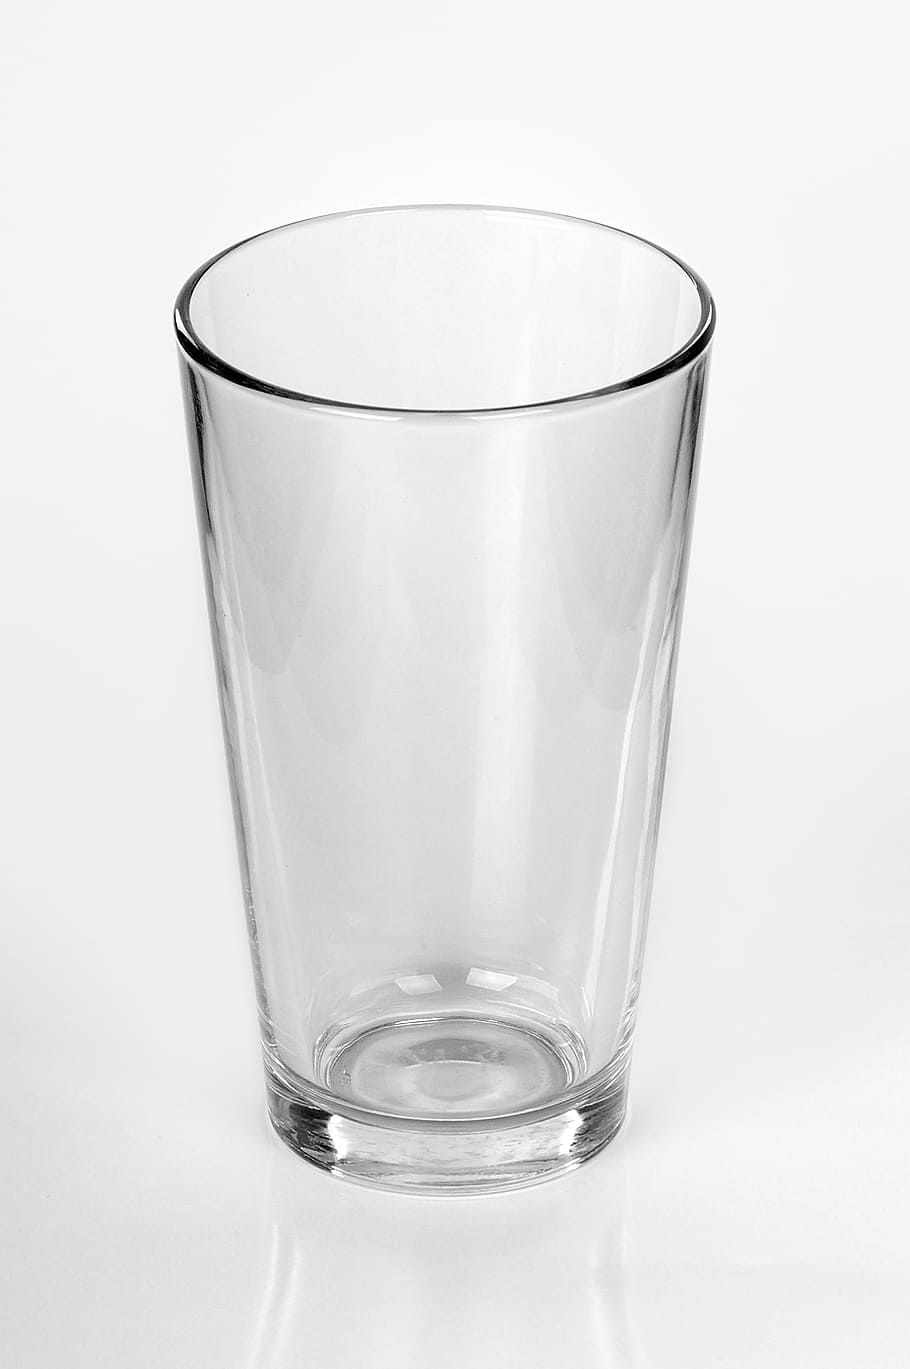 bebida, líquido, limpieza, en blanco, vidrio, vasos de cerveza, beber cerveza, vaso vacío, cristal, transparente